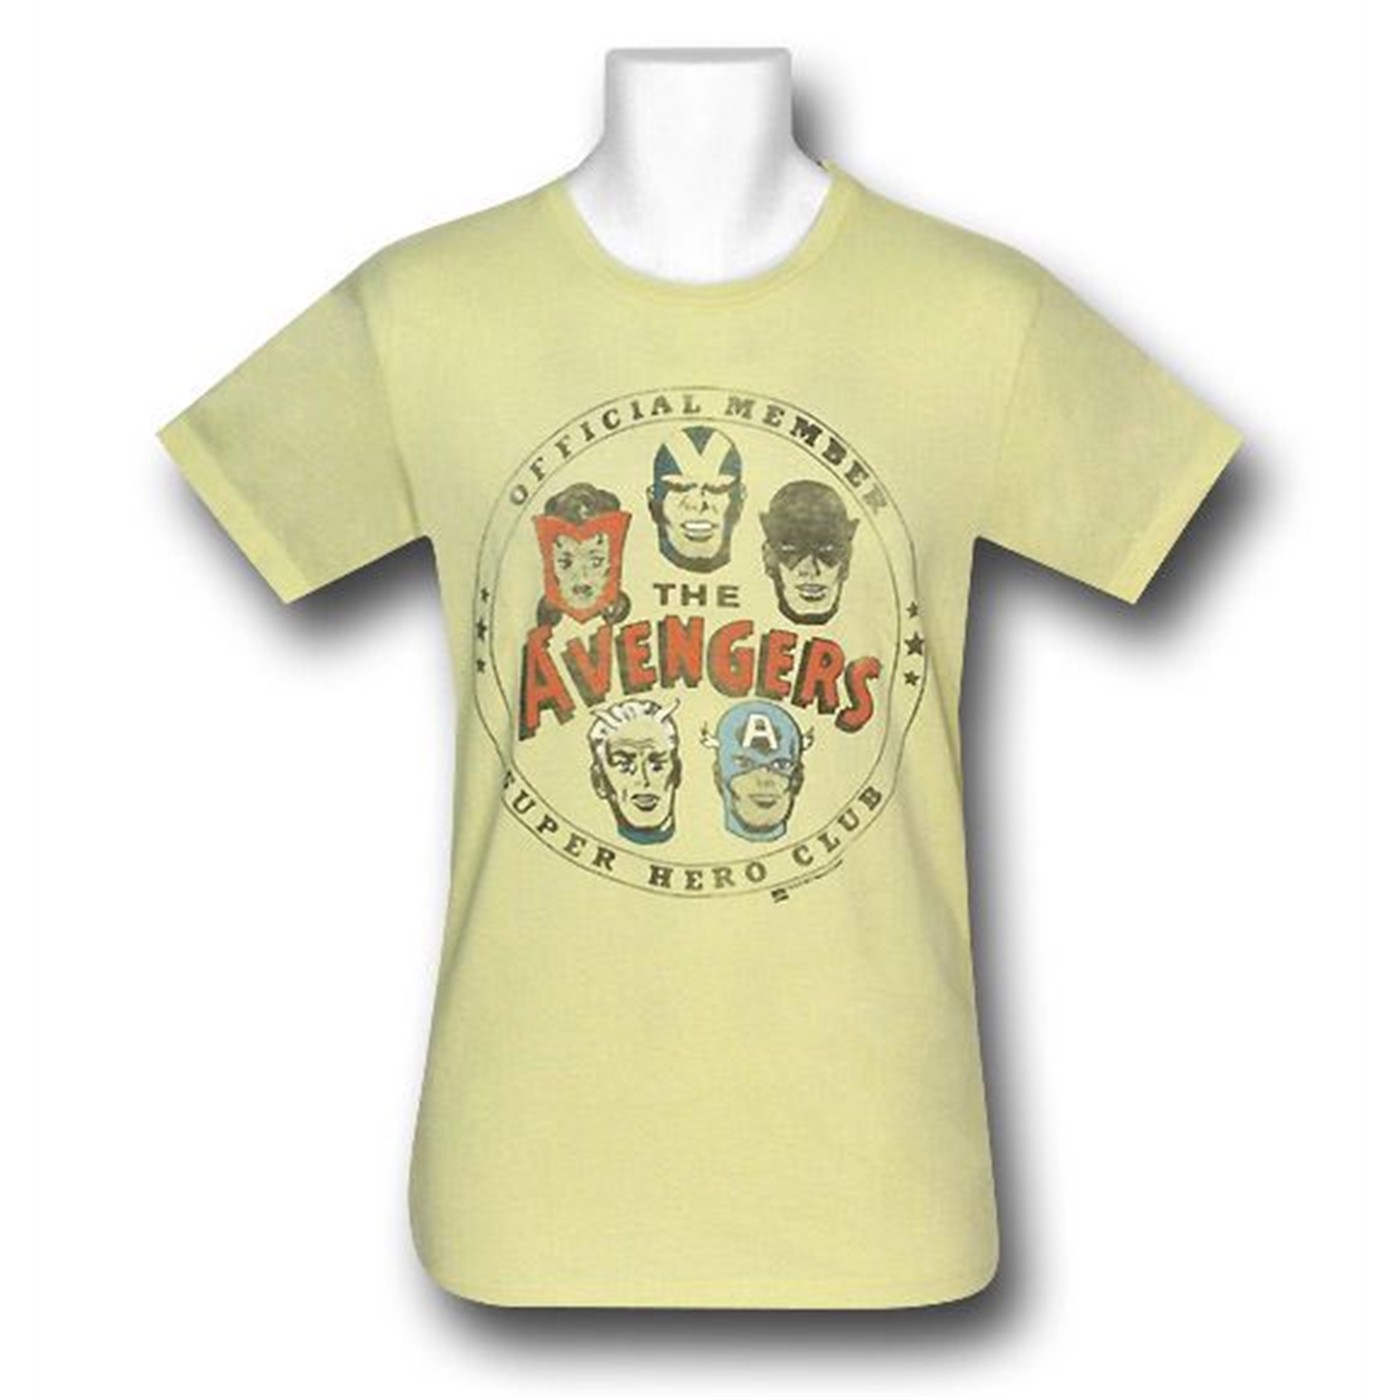 Avengers Official Member Junk Food T-Shirt